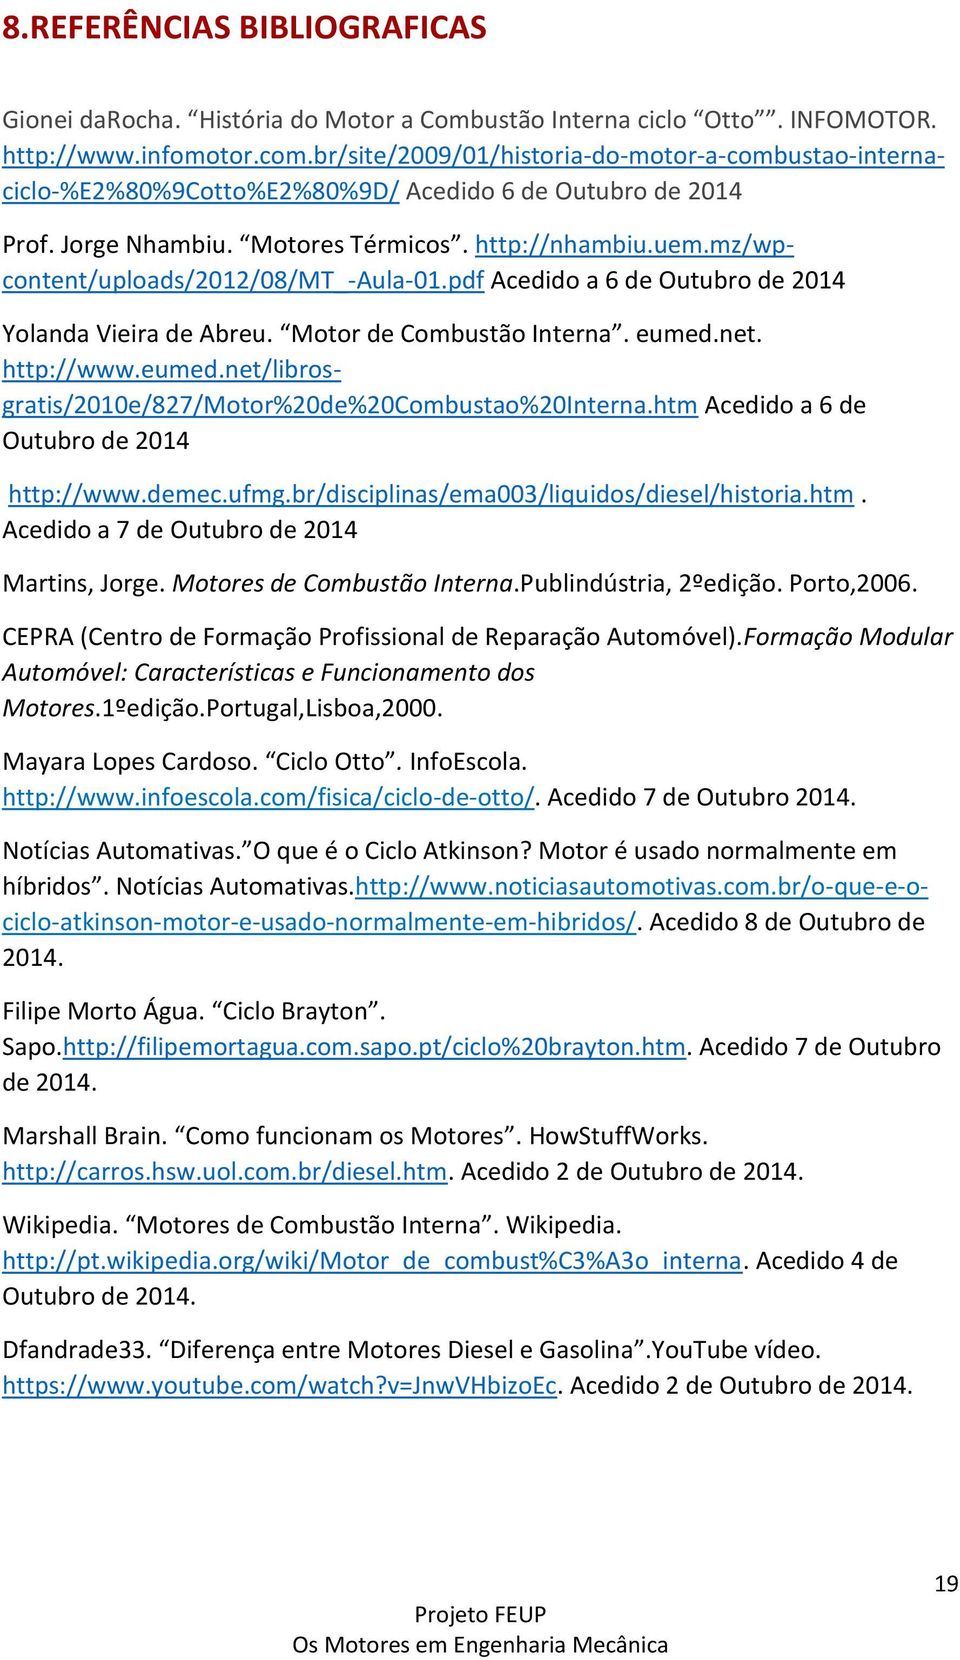 mz/wpcontent/uploads/2012/08/mt_-aula-01.pdf Acedido a 6 de Outubro de 2014 Yolanda Vieira de Abreu. Motor de Combustão Interna. eumed.net. http://www.eumed.net/librosgratis/2010e/827/motor%20de%20combustao%20interna.